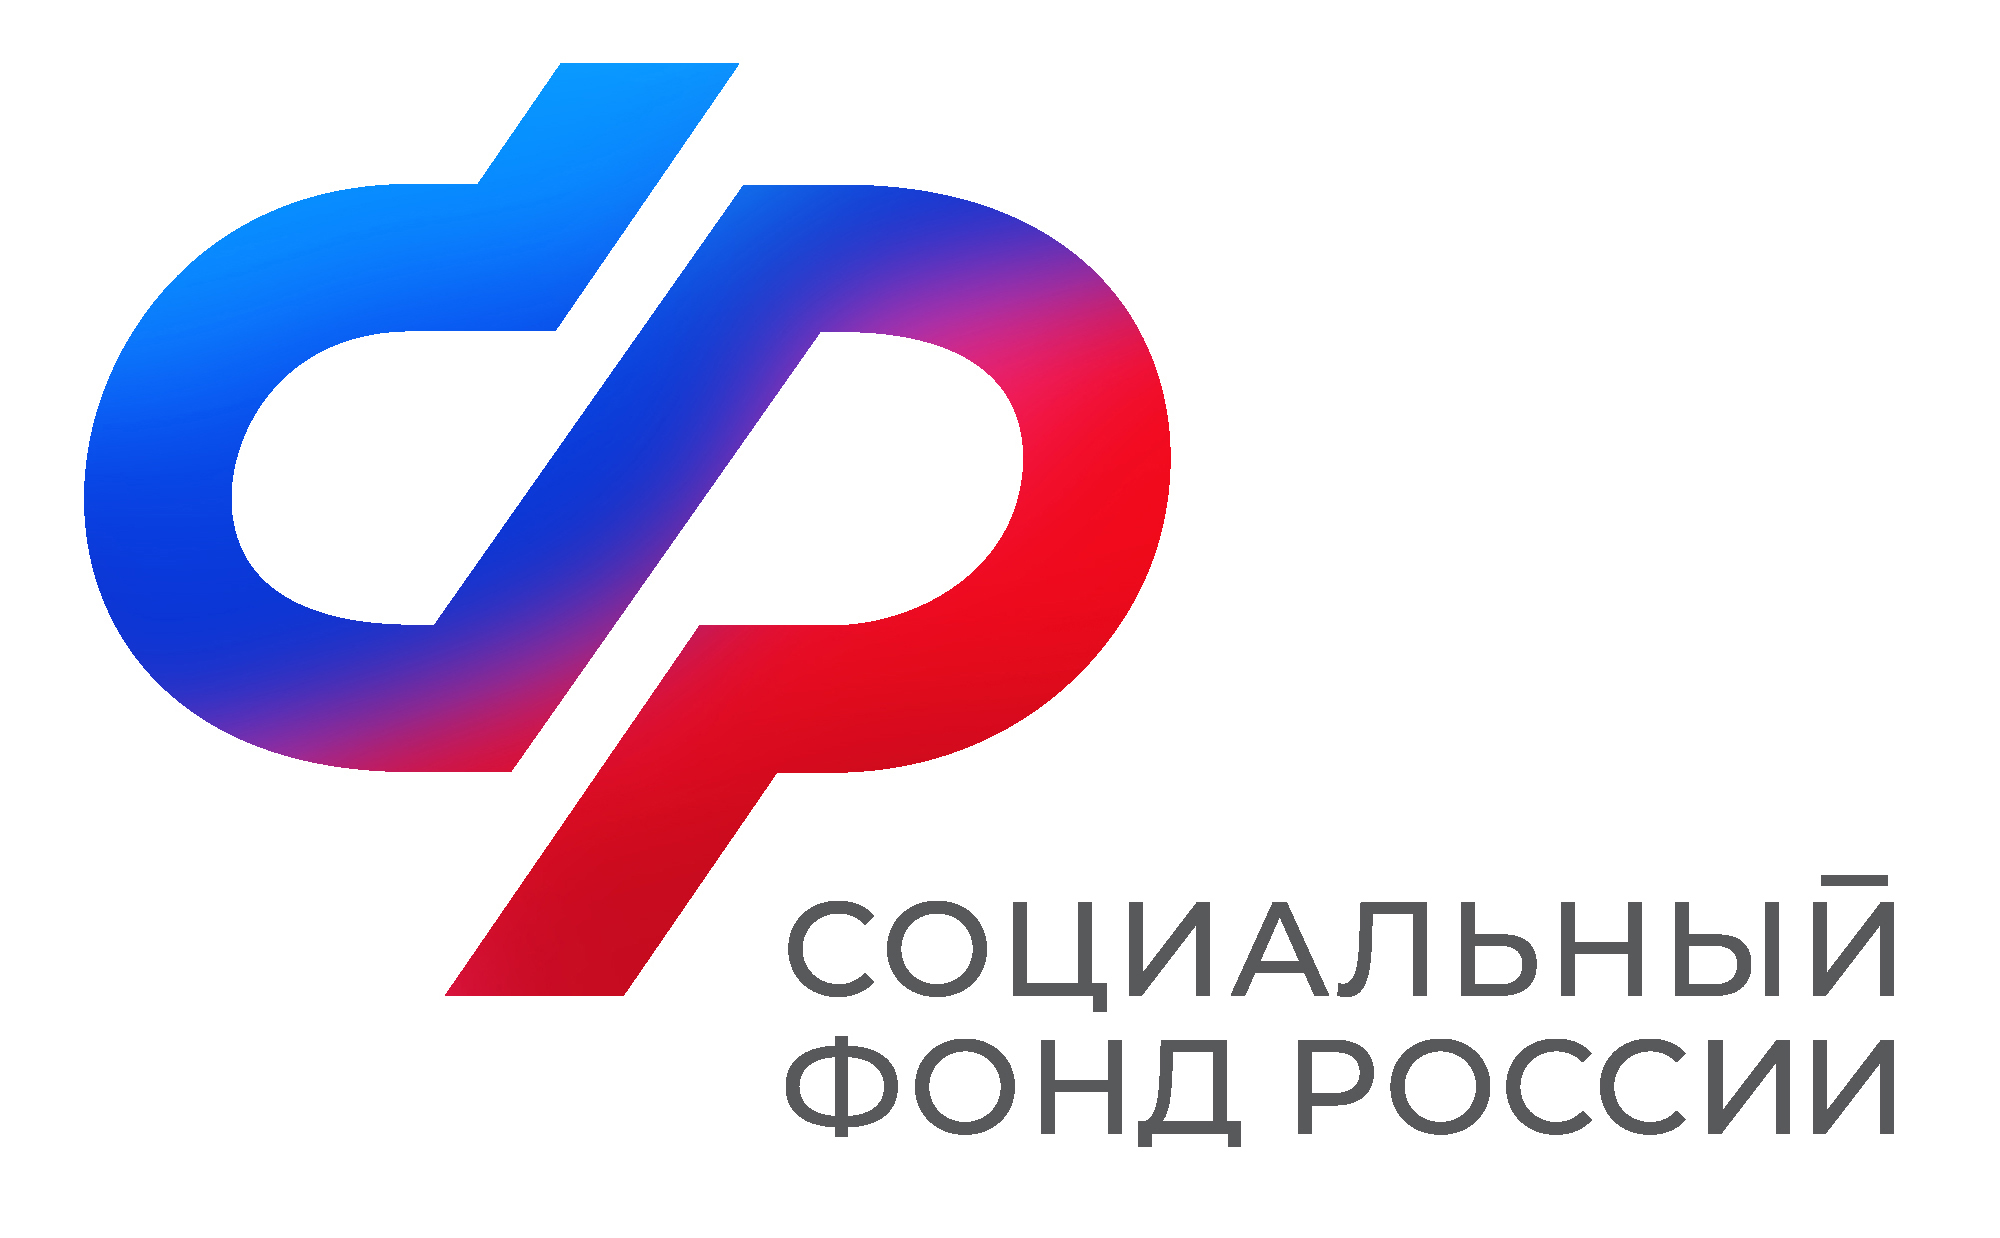 Отделение СФР по Воронежской области напоминает: с 1 июля изменились правила выплаты накопительной пенсии.